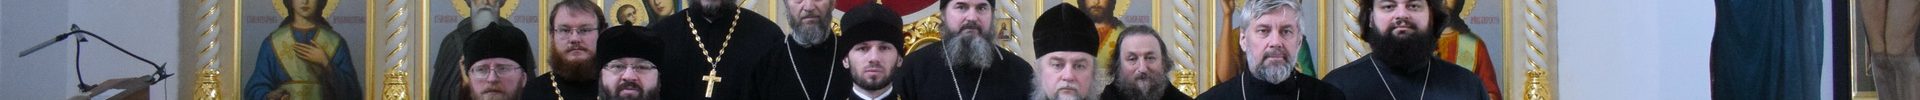 Благочинный Рогачевского церковного округа возглавил первое в 2019 году собрание духовенства благочиния